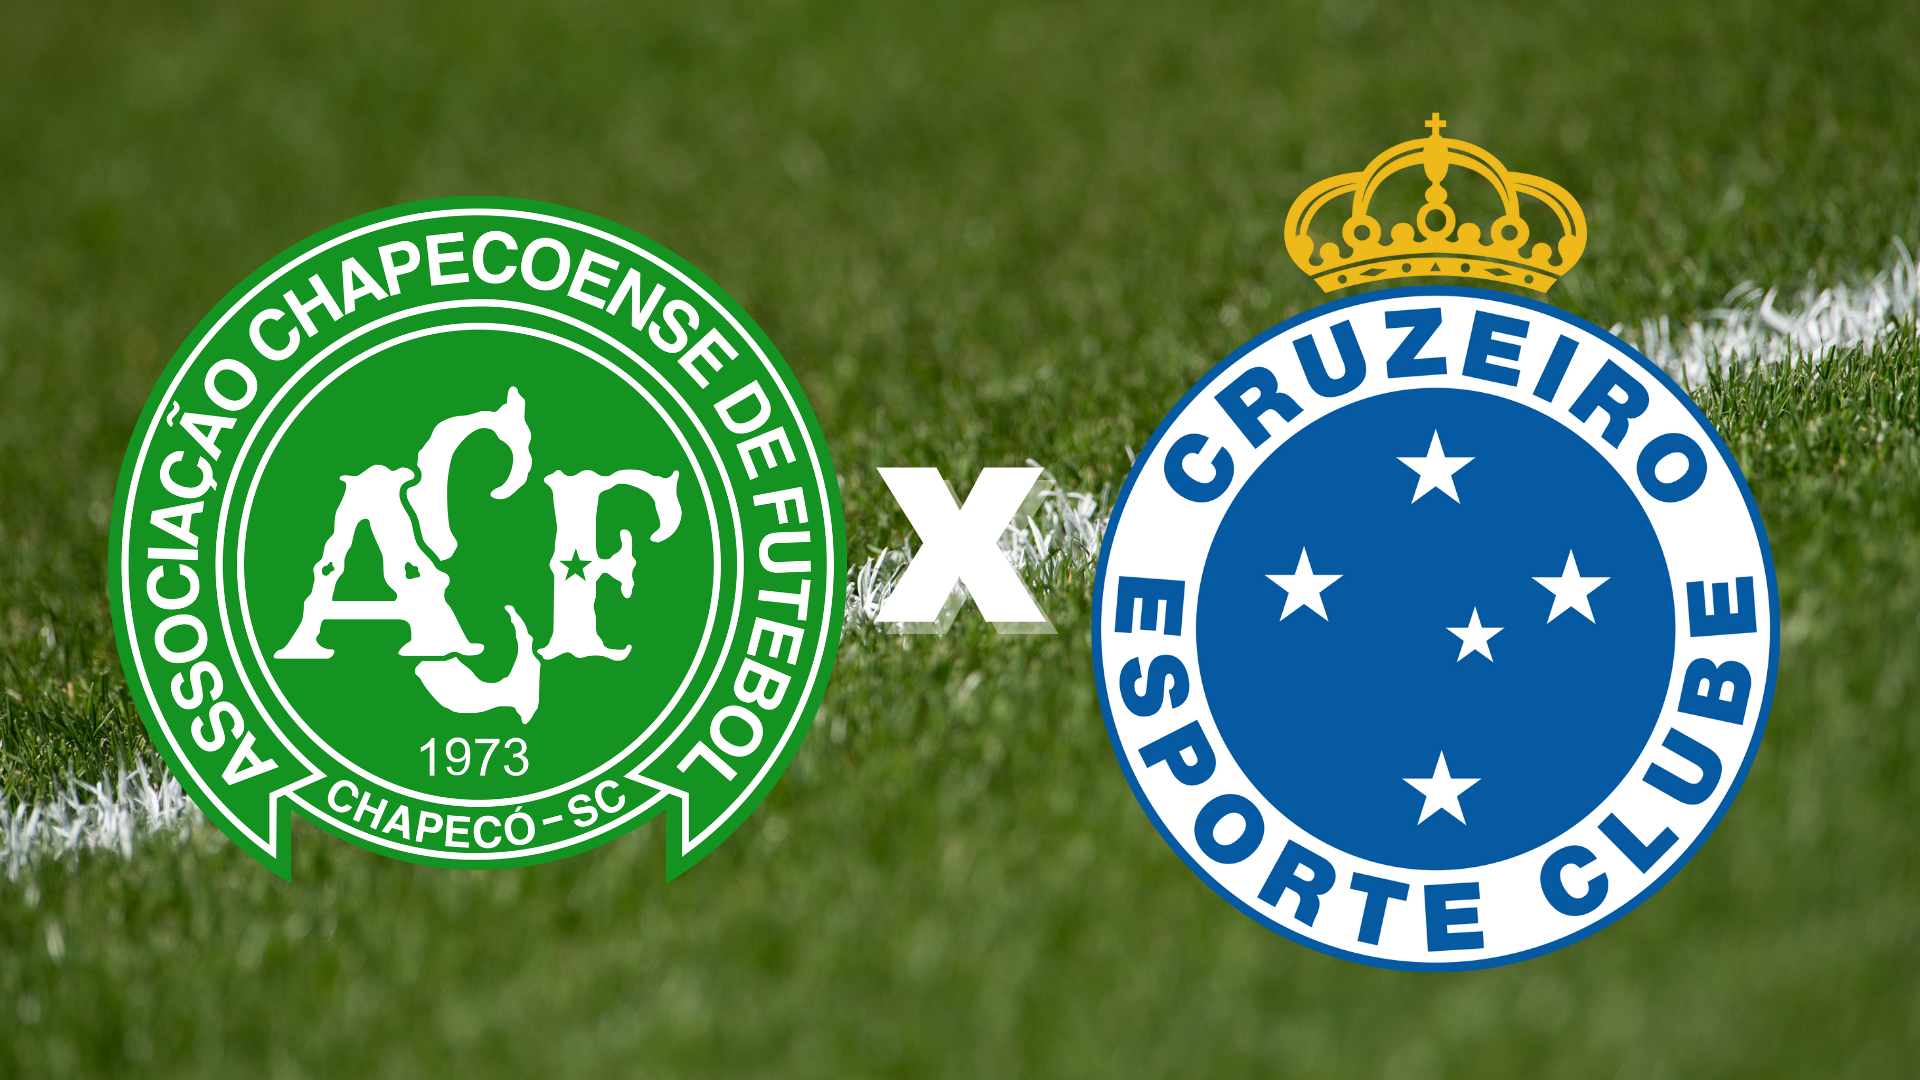 Chapecoense x Cruzeiro se enfrentam pela quinta rodada do Campeonato Brasileiro - Série B